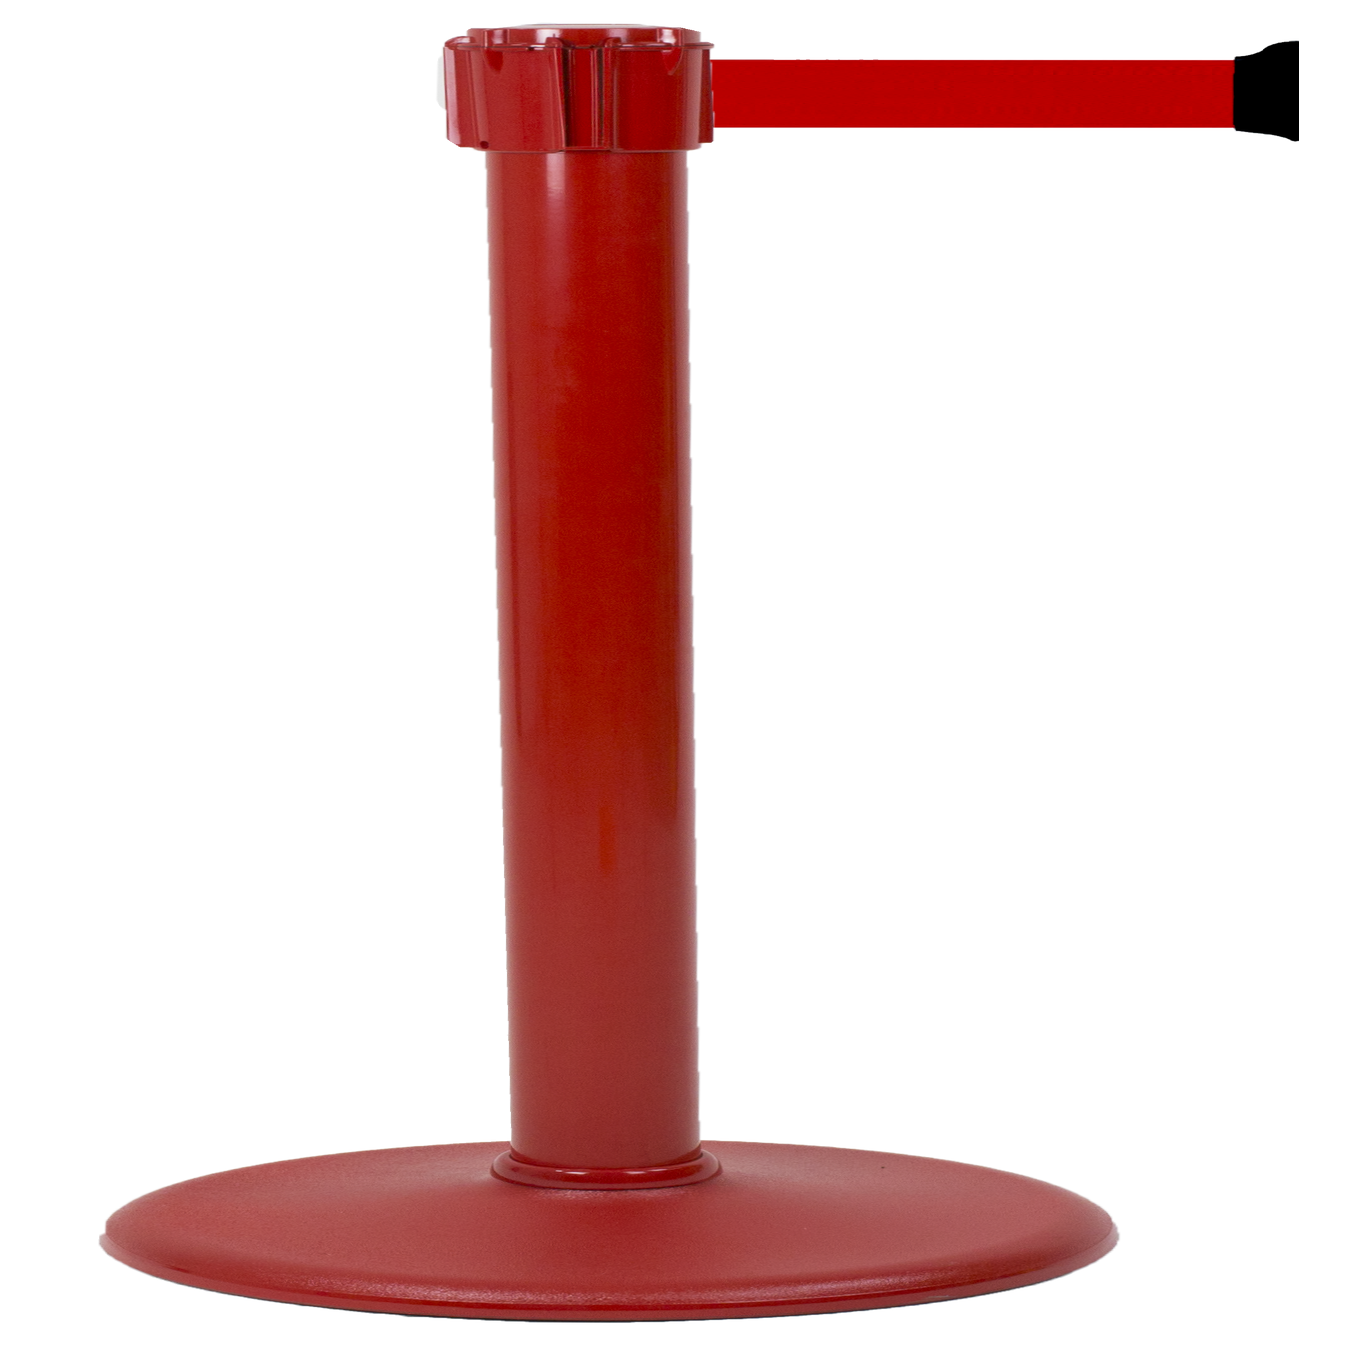 Poteau Alu Rouge laqué à sangle Rouge 3m x 50mm sur socle portable - 2053303 0